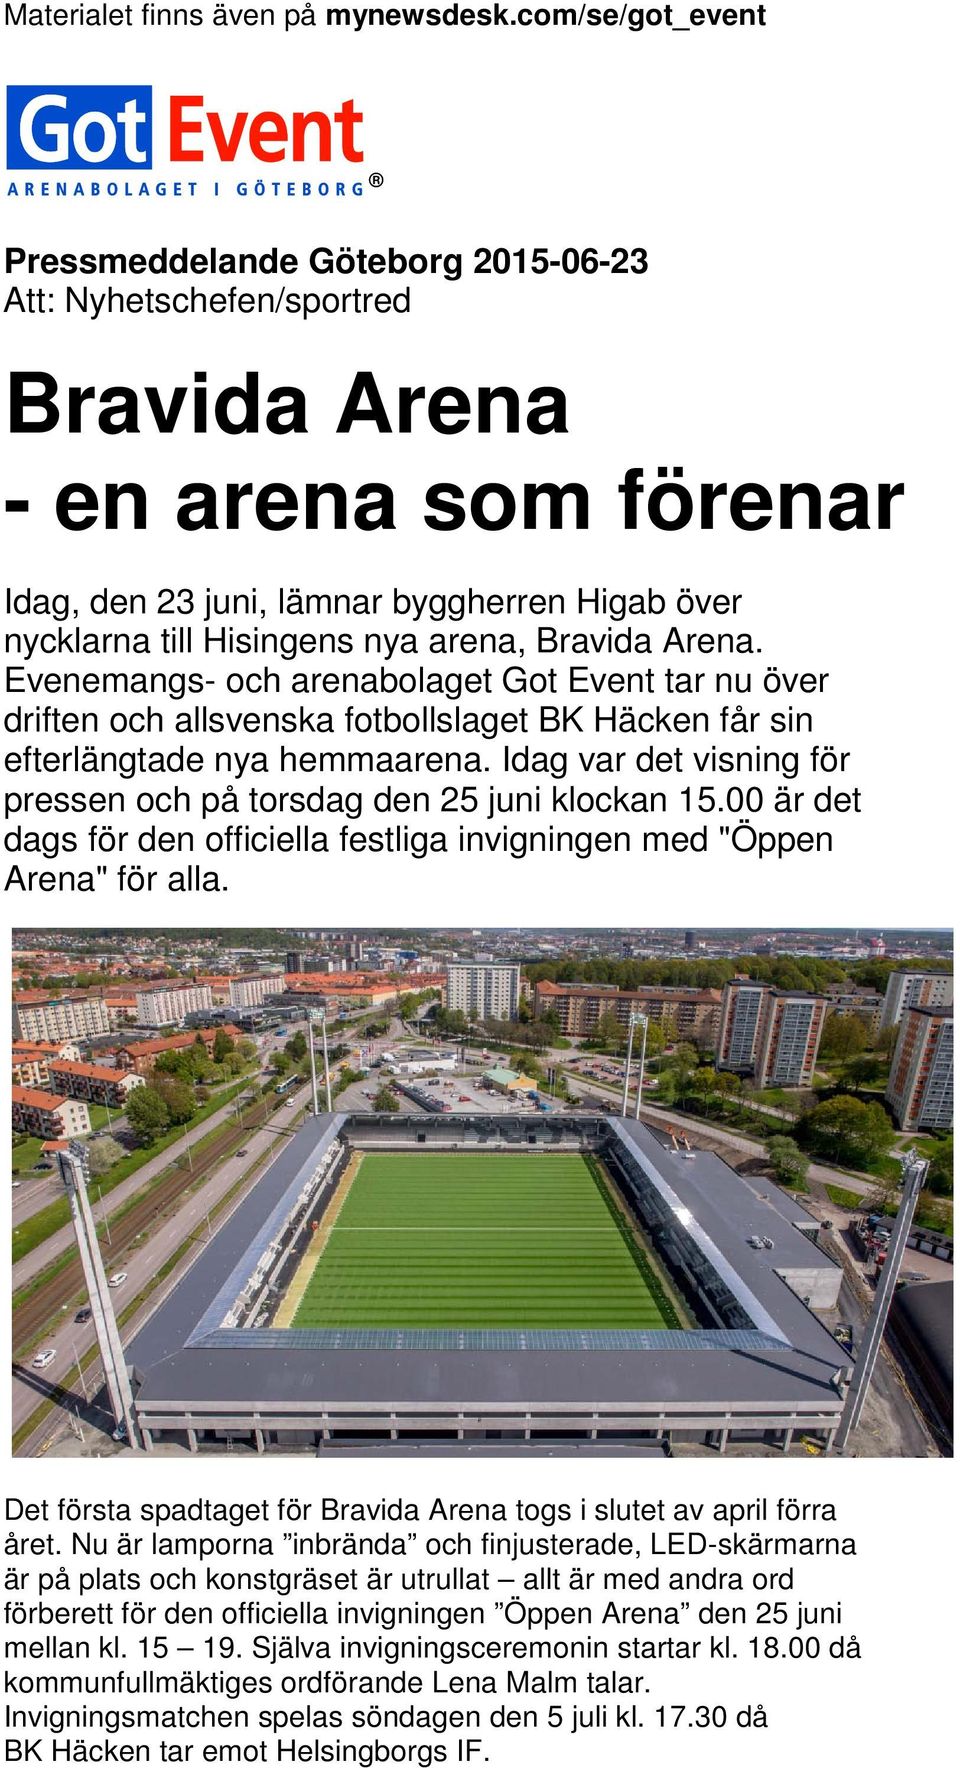 Idag var det visning för pressen och på torsdag den 25 juni klockan 15.00 är det dags för den officiella festliga invigningen med "Öppen Arena" för alla.